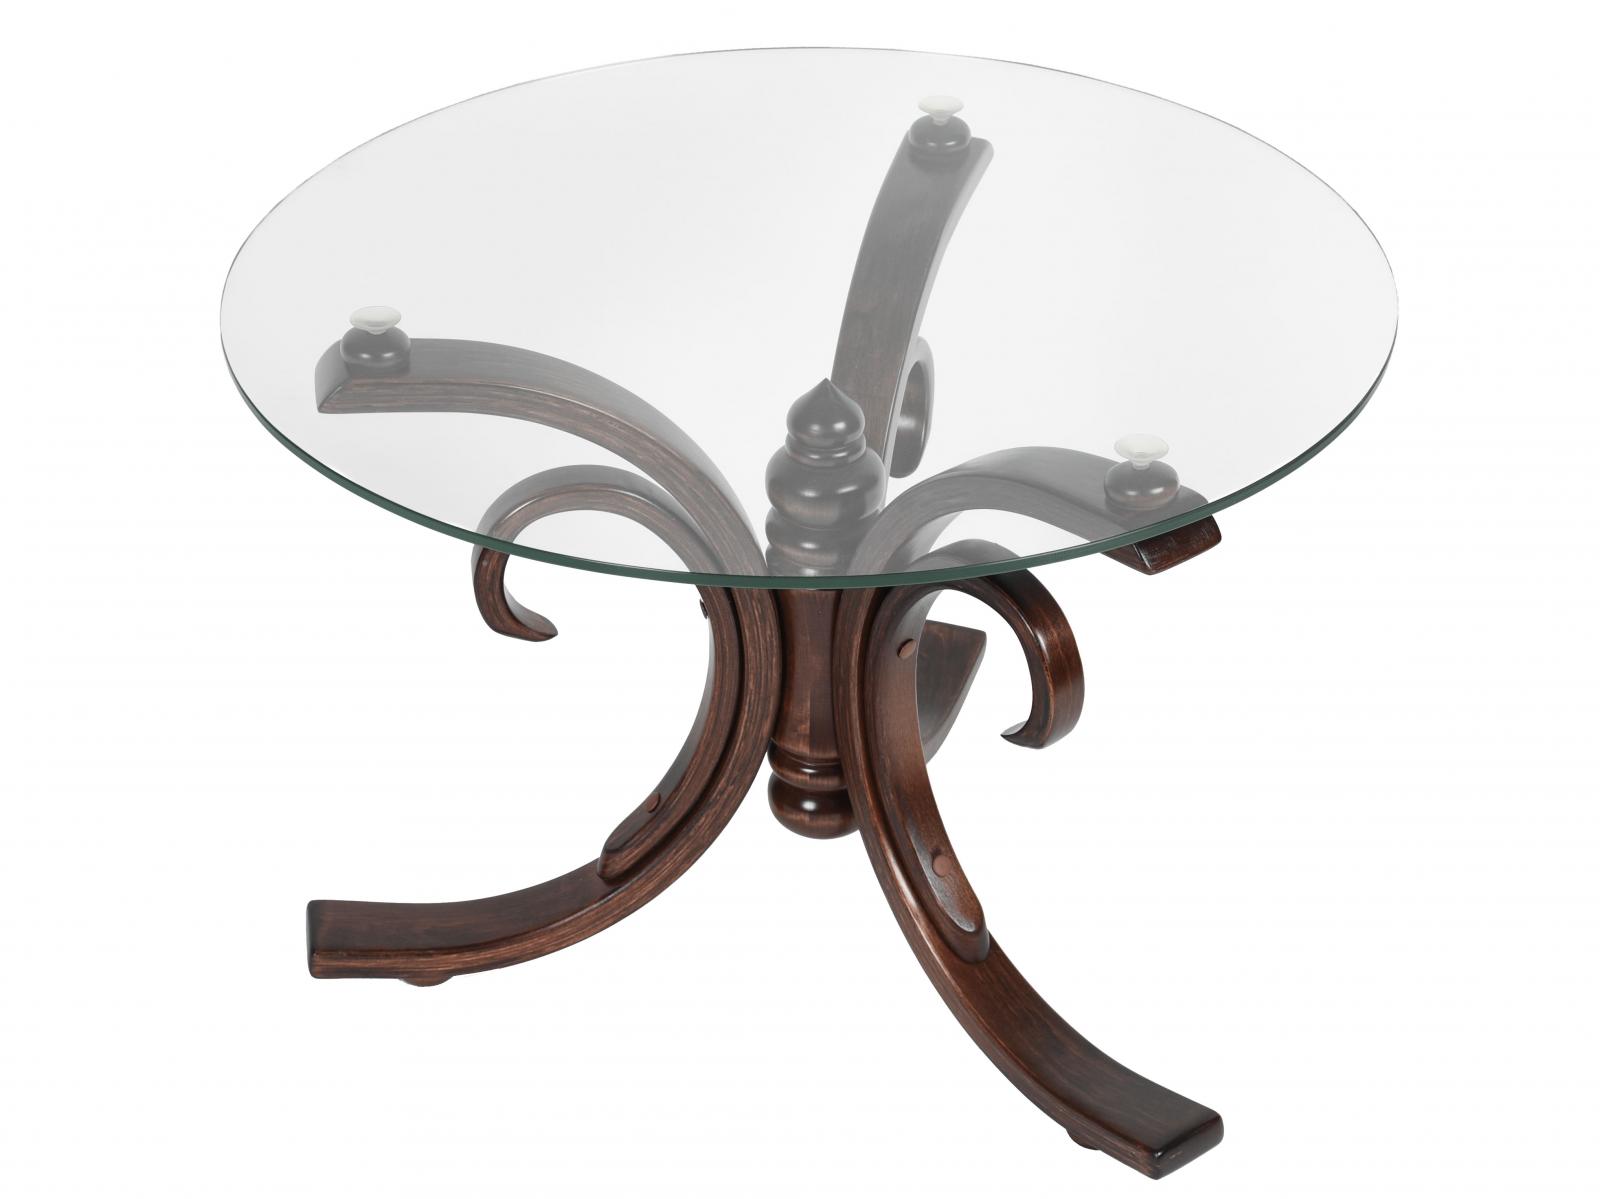 Купить стол Мебелик Стол журнальный Мебелик Миледи, темно-коричневый темно-коричневый дешево на официальном сайте